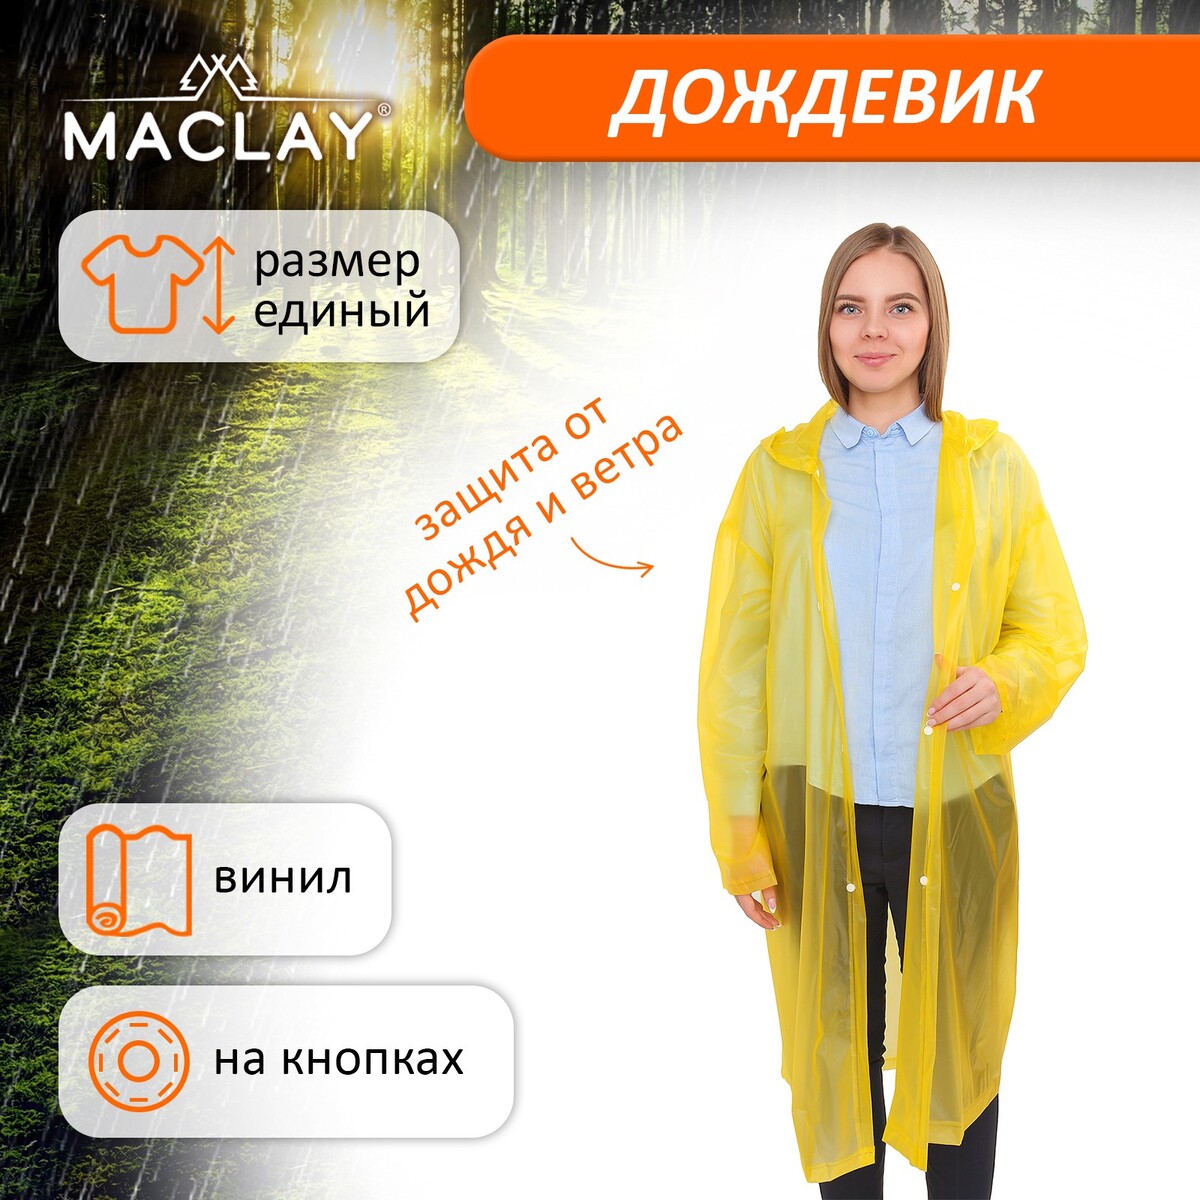 Дождевик-плащ maclay, универсальный, цвет желтый